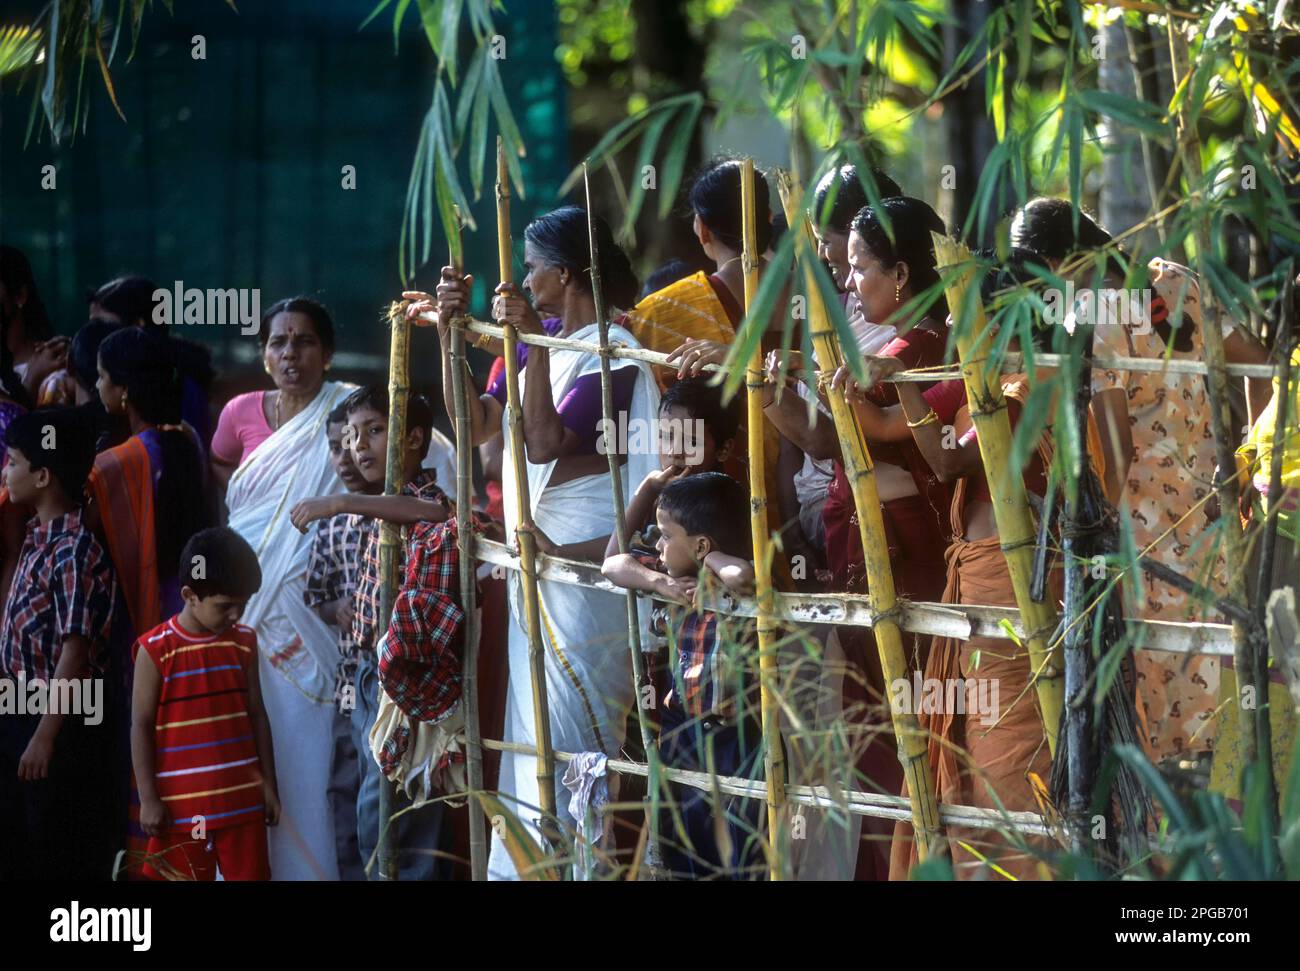 Public regardant la course de bateau Snake pendant le festival Onam à Payippad près de Haripad, Kerala, Inde, Asie Banque D'Images